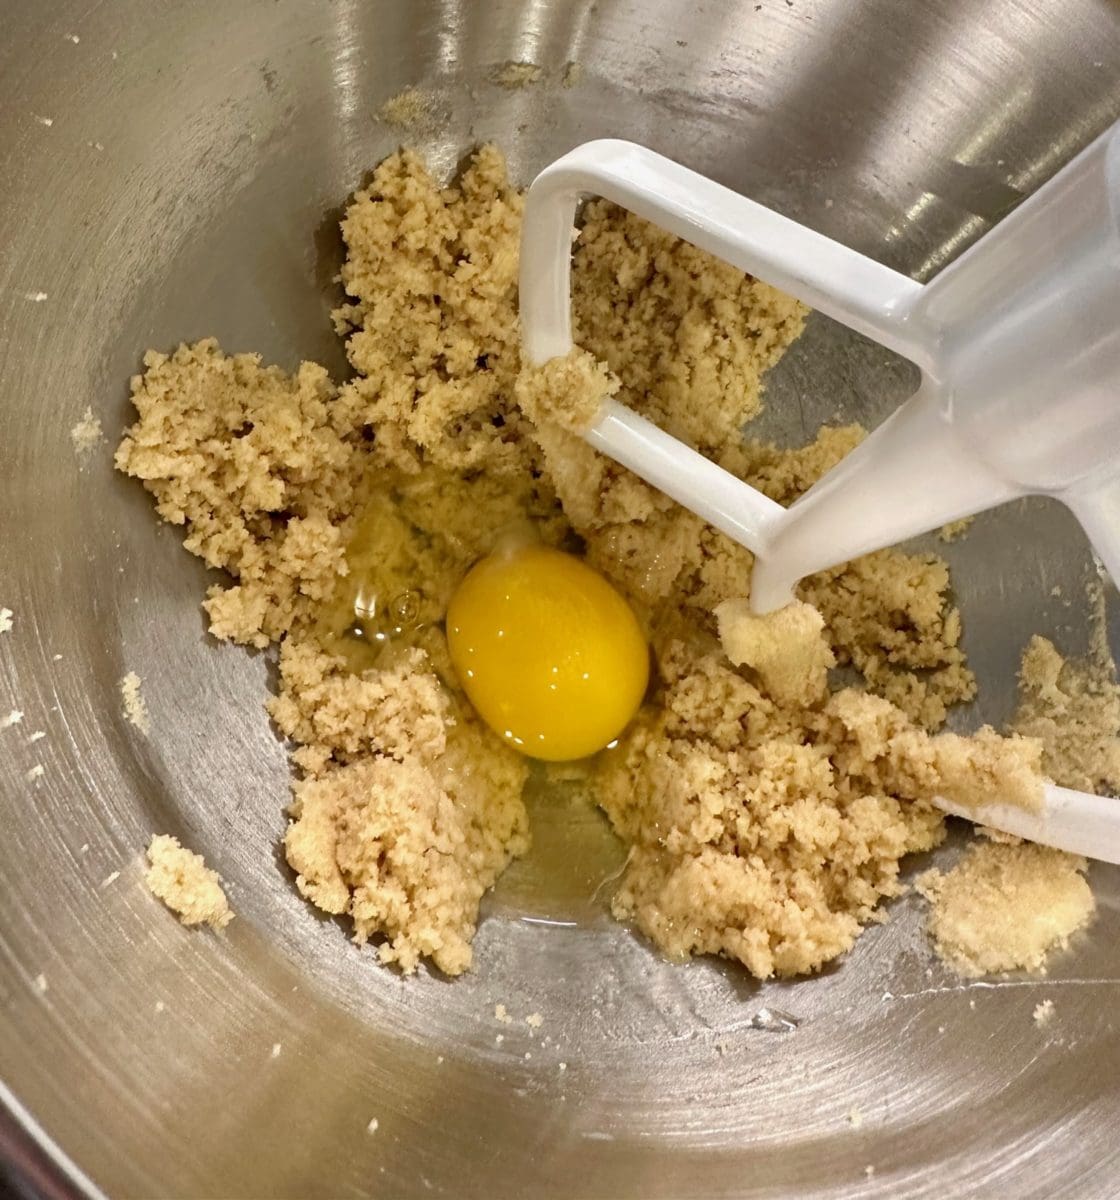 adding egg